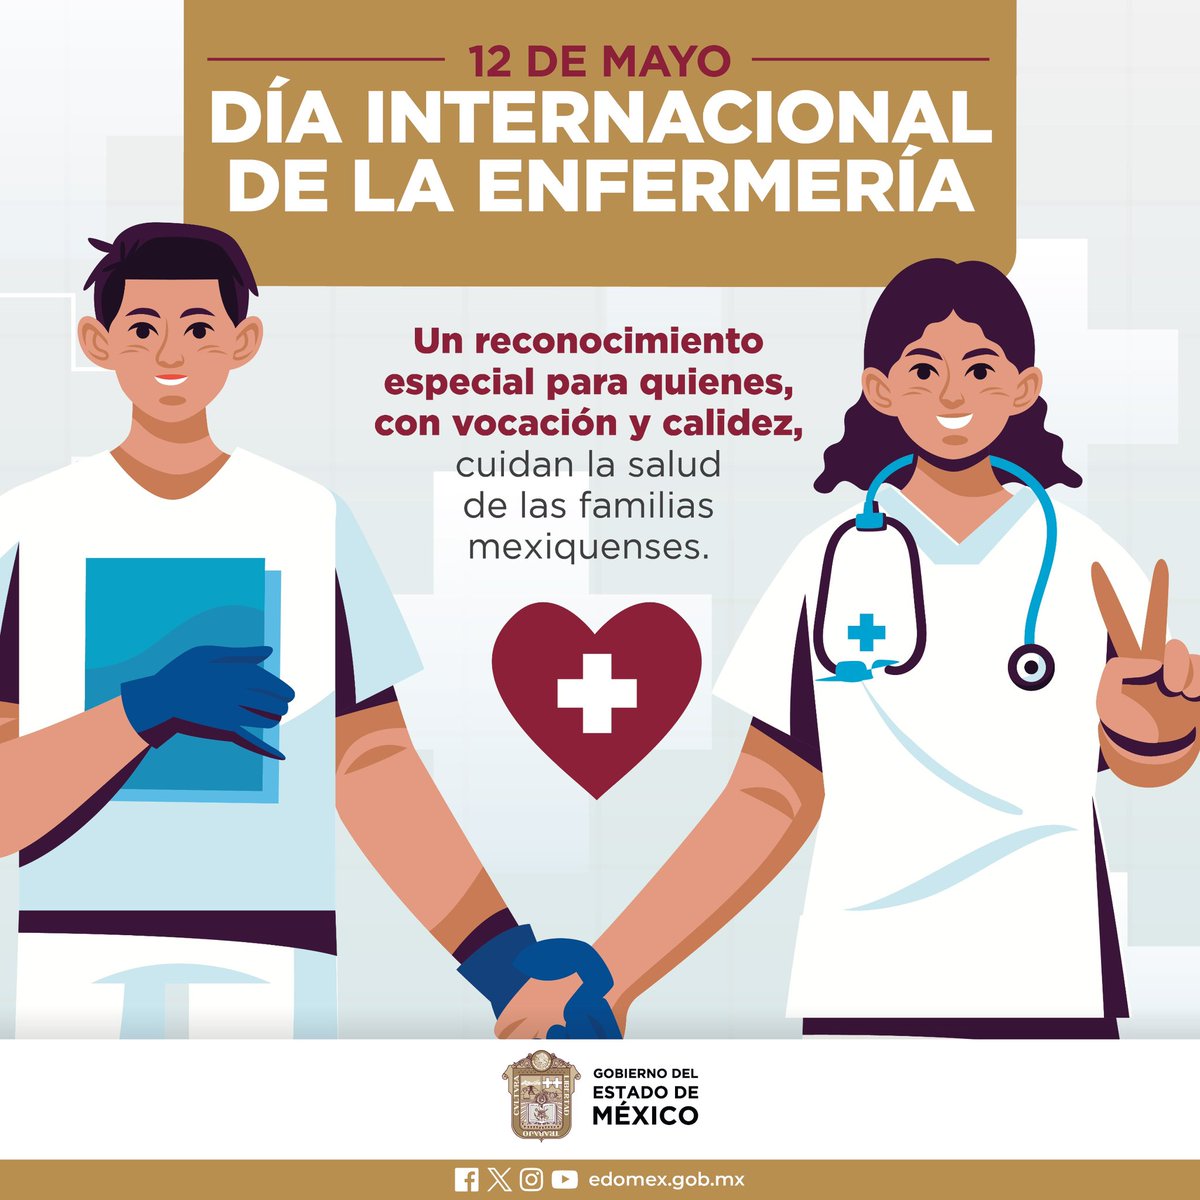 Por su gran vocación y su calidad humana, envío una gran felicitación y reconocimiento a las enfermeras y enfermeros que laboran en el #EstadoDeMéxico en este Día Internacional de la Enfermería.